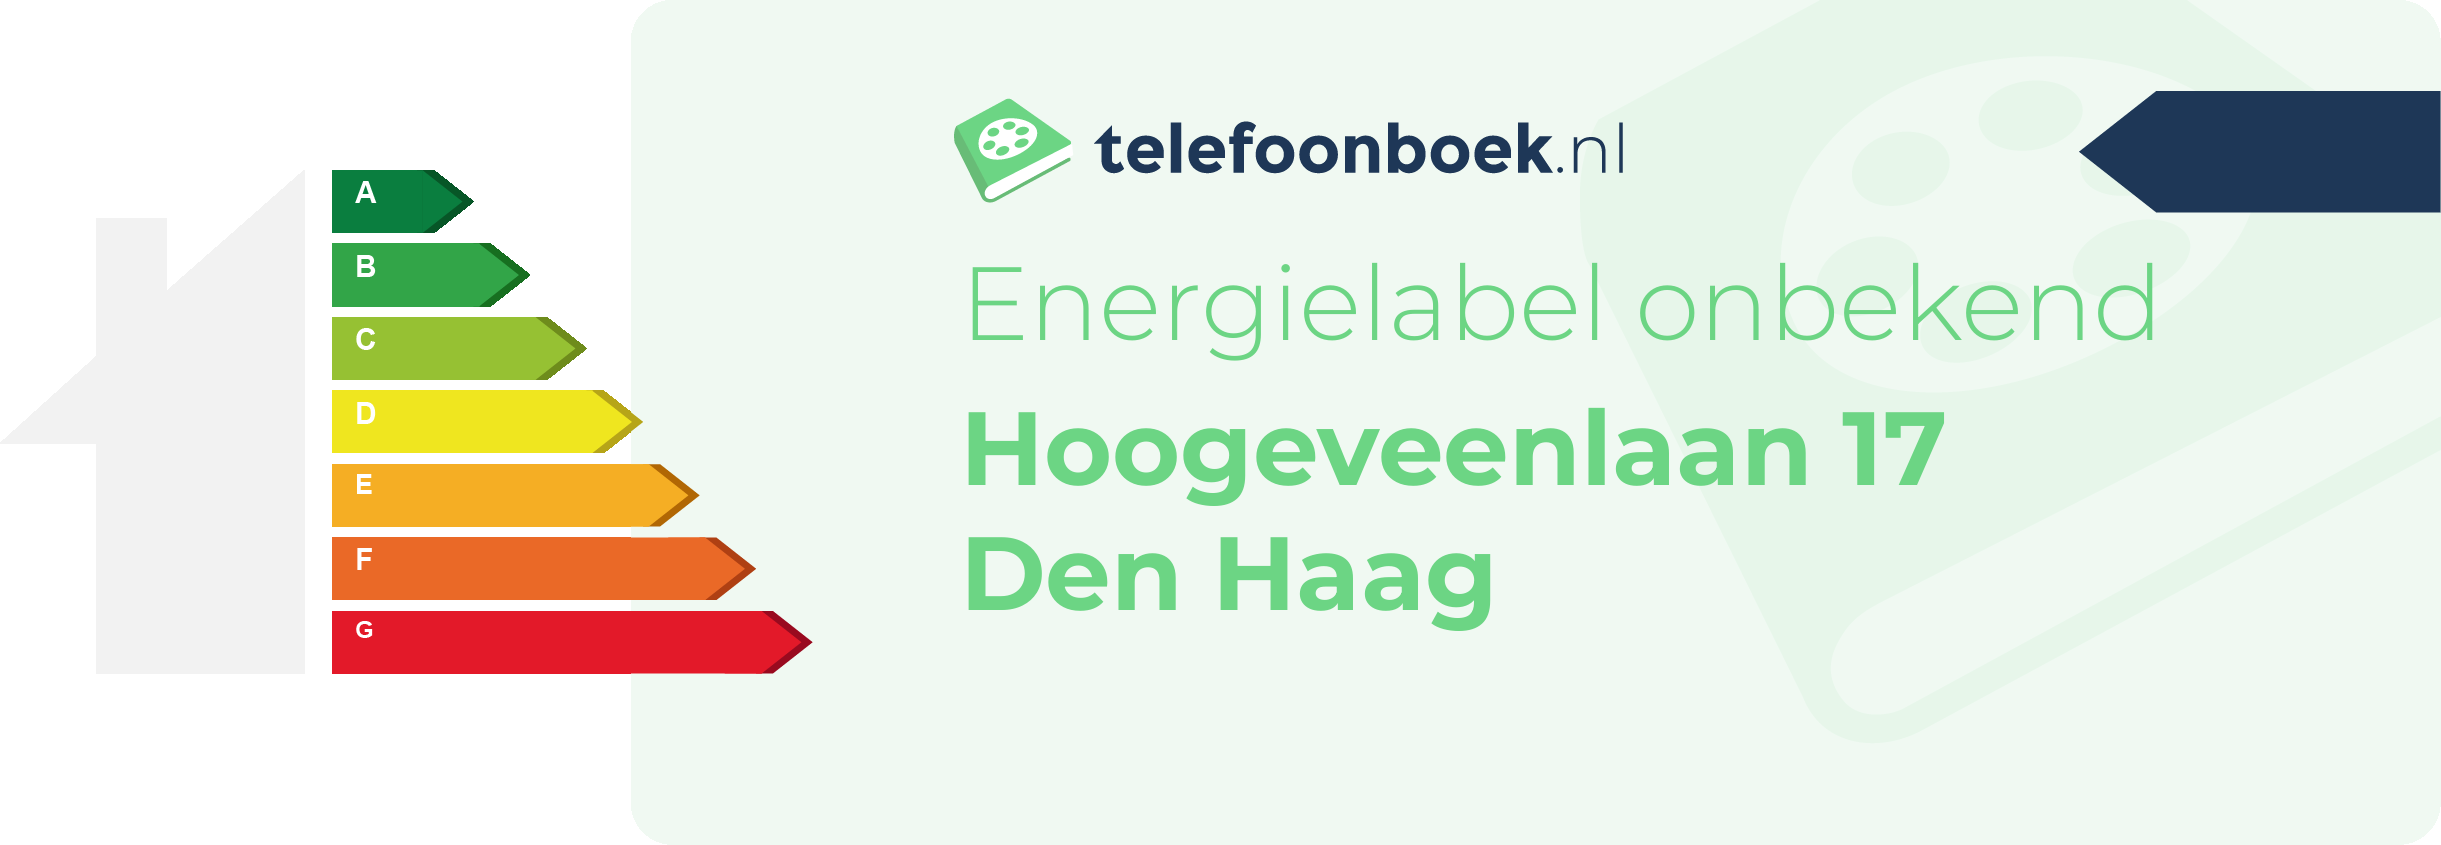 Energielabel Hoogeveenlaan 17 Den Haag